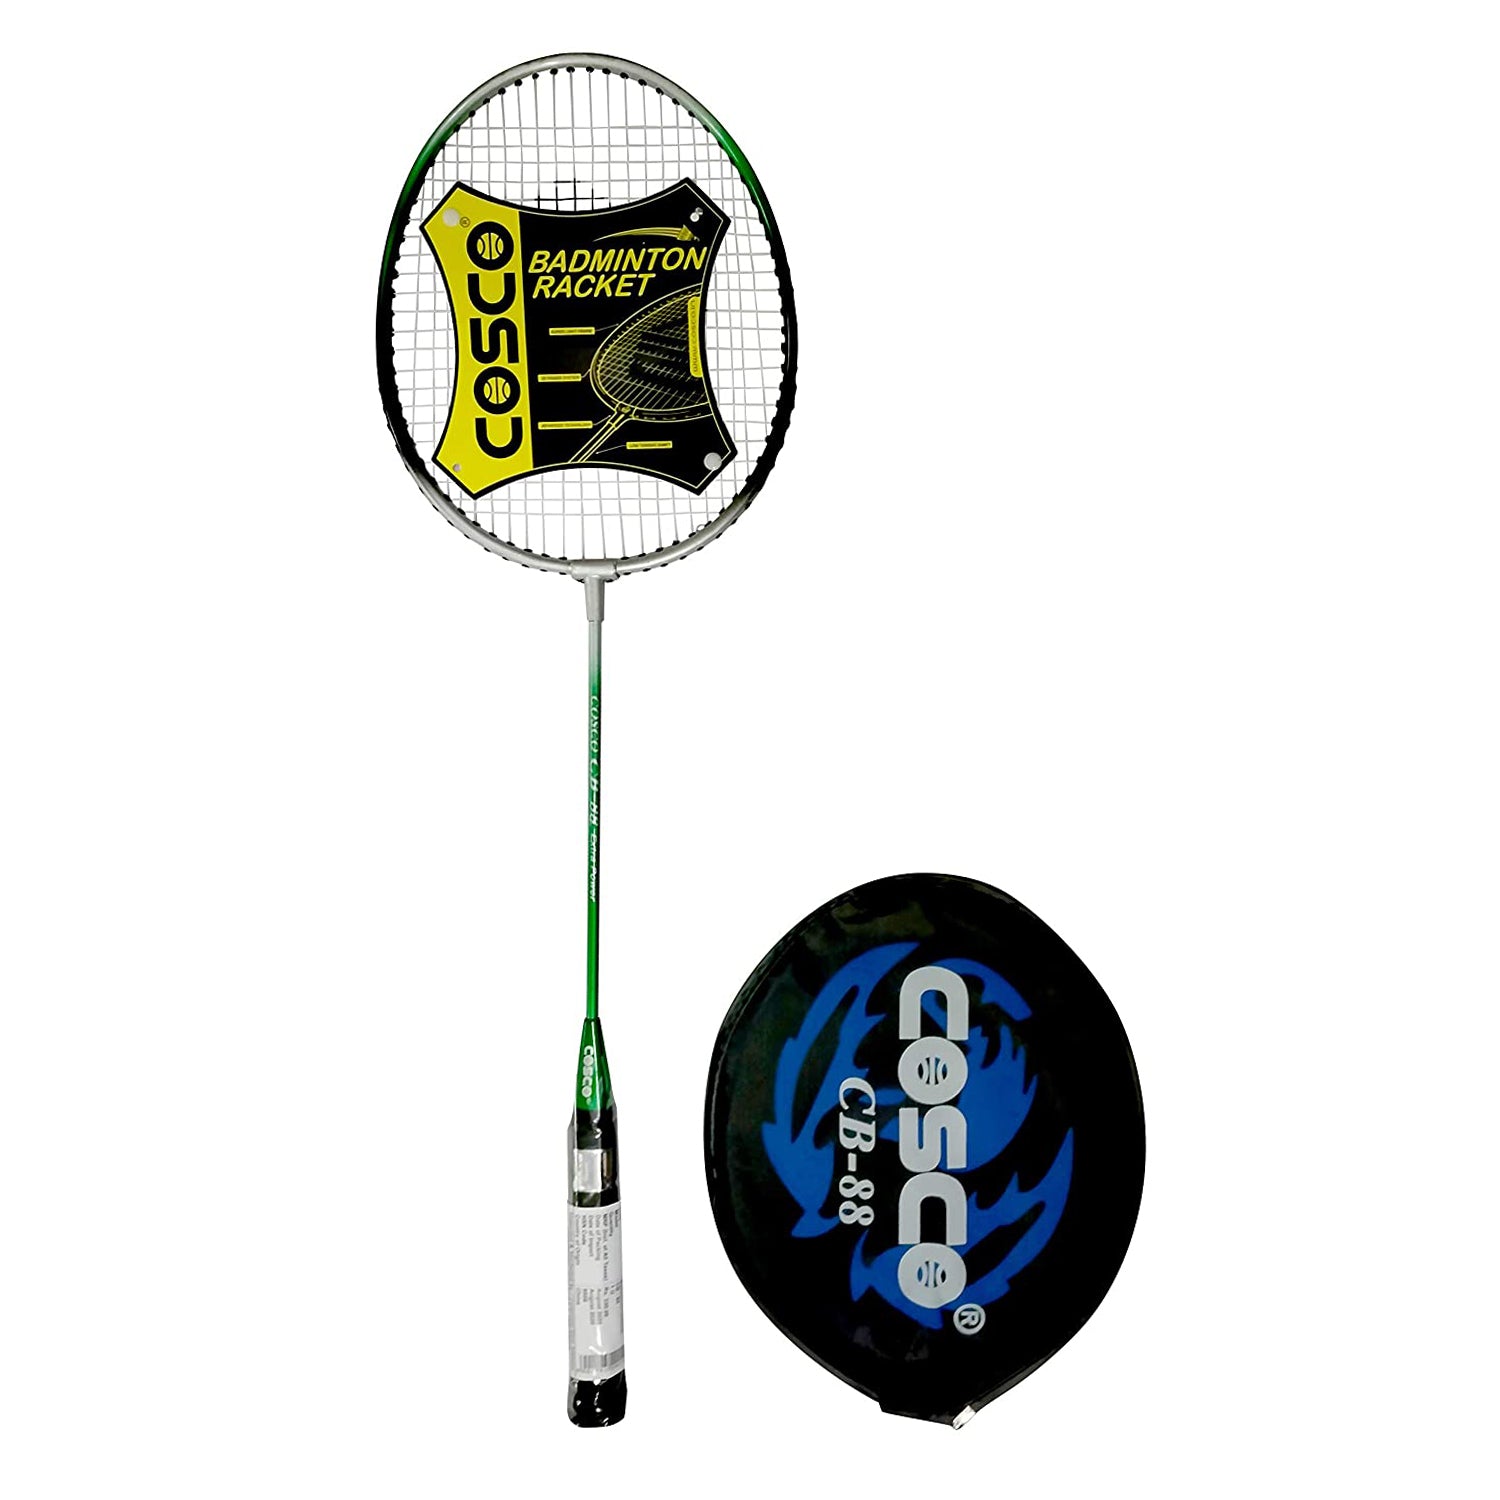 badminton racket price cosco